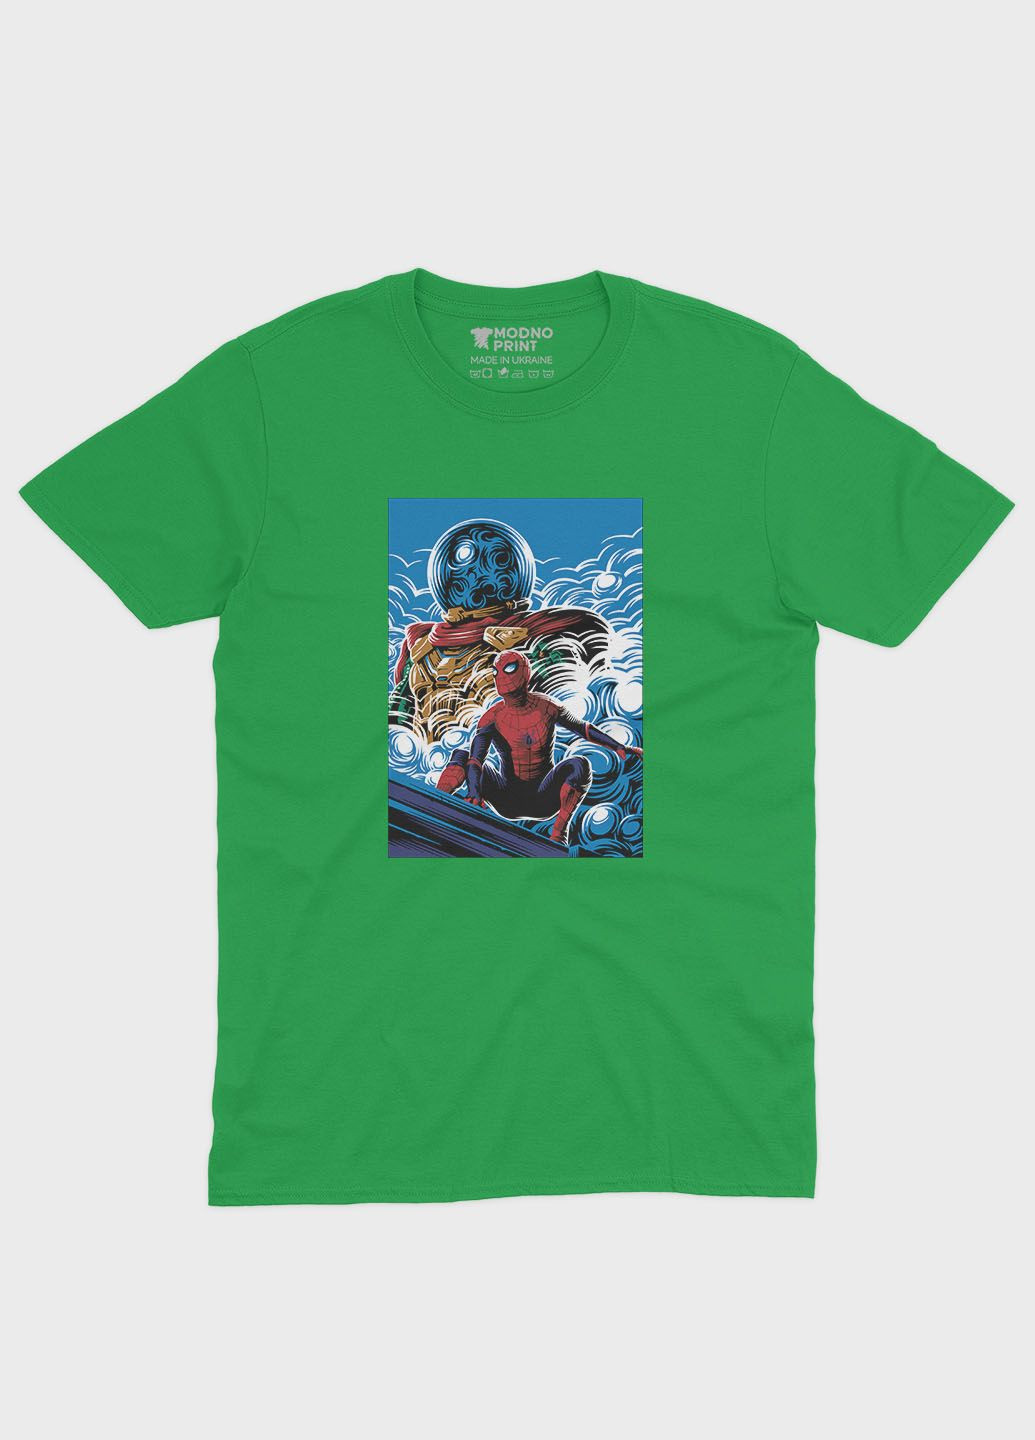 Зелена демісезонна футболка для хлопчика з принтом супергероя - людина-павук (ts001-1-keg-006-014-062-b) Modno